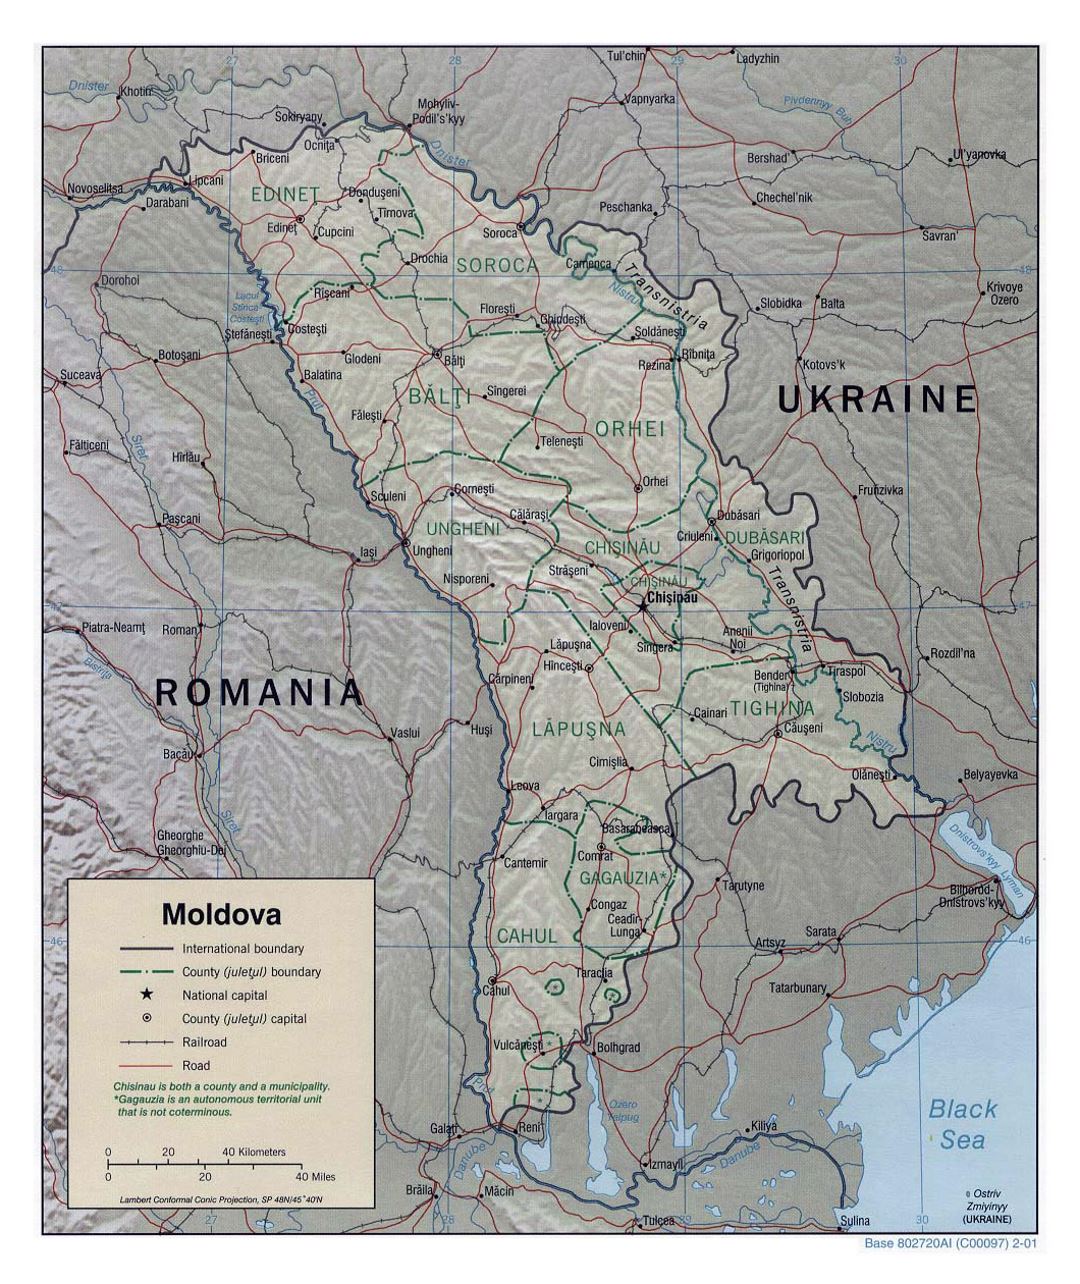 Detallado mapa político y administrativo de Moldavia con alivio, carreteras, vías férreas y principales ciudades - 2001